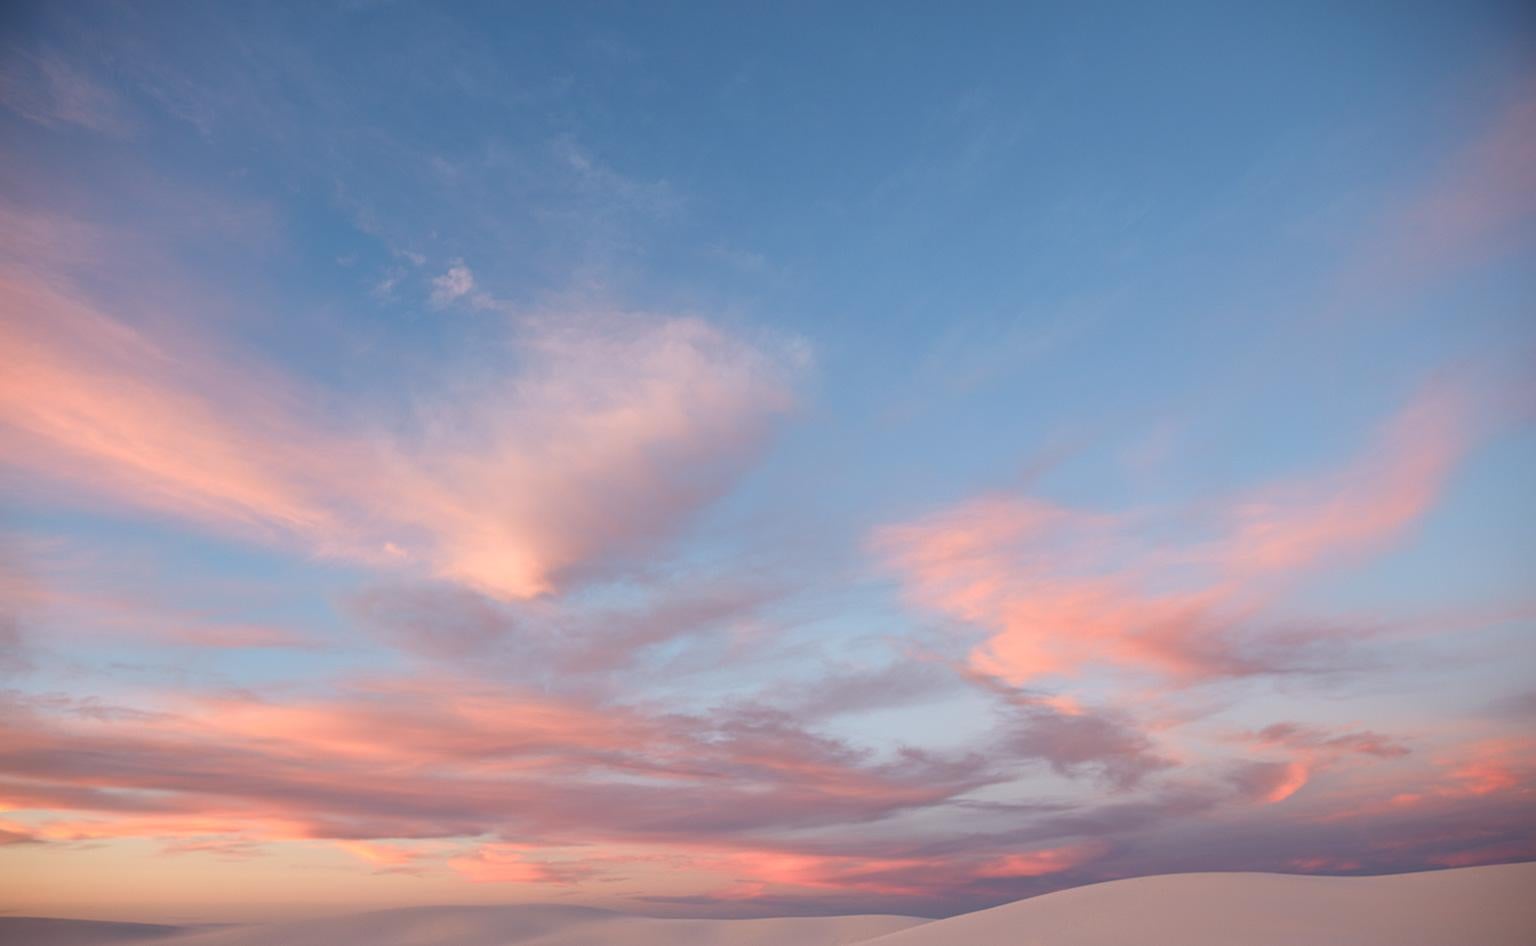 Cloud Study VI – großformatige Fotografie einer dramatischen motherochromen Wolkenlandschaft im Himmel – Photograph von Frank Schott